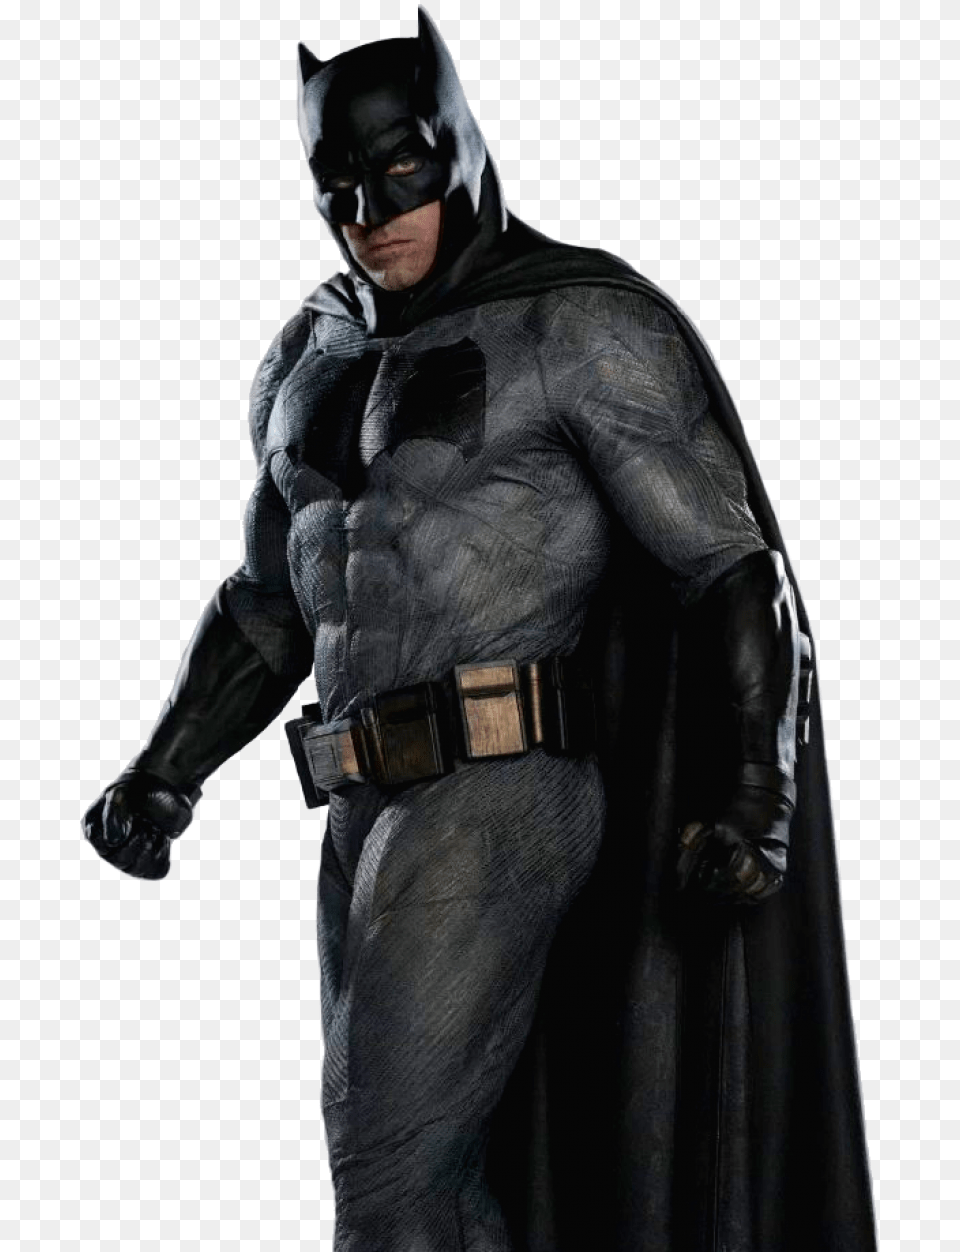 The Batman Batman, Adult, Male, Man, Person Png Image